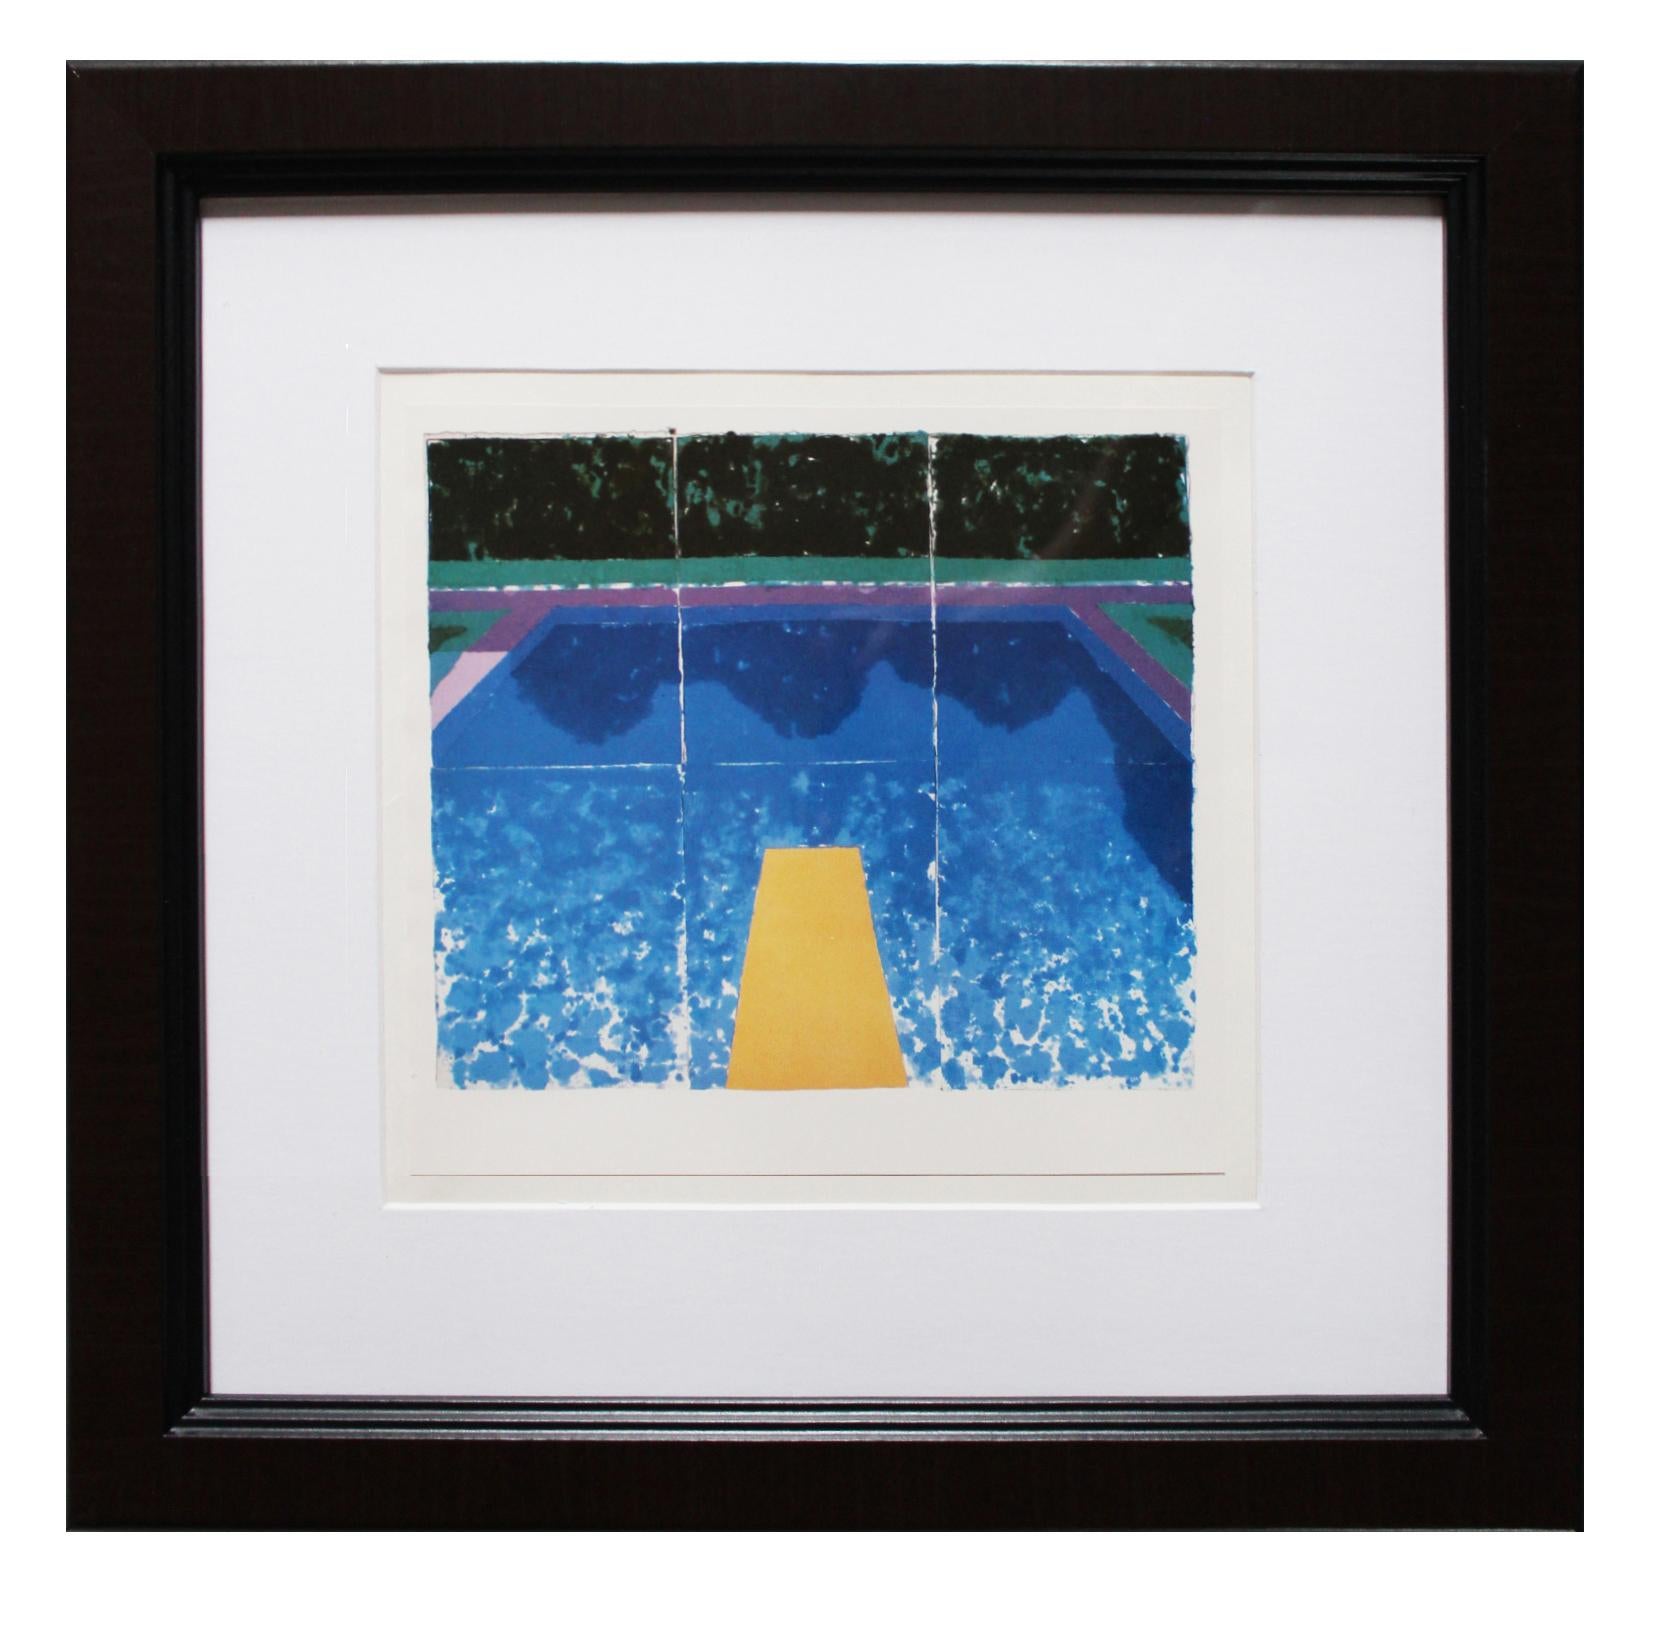 Paper Pools invitation - Art by David Hockney